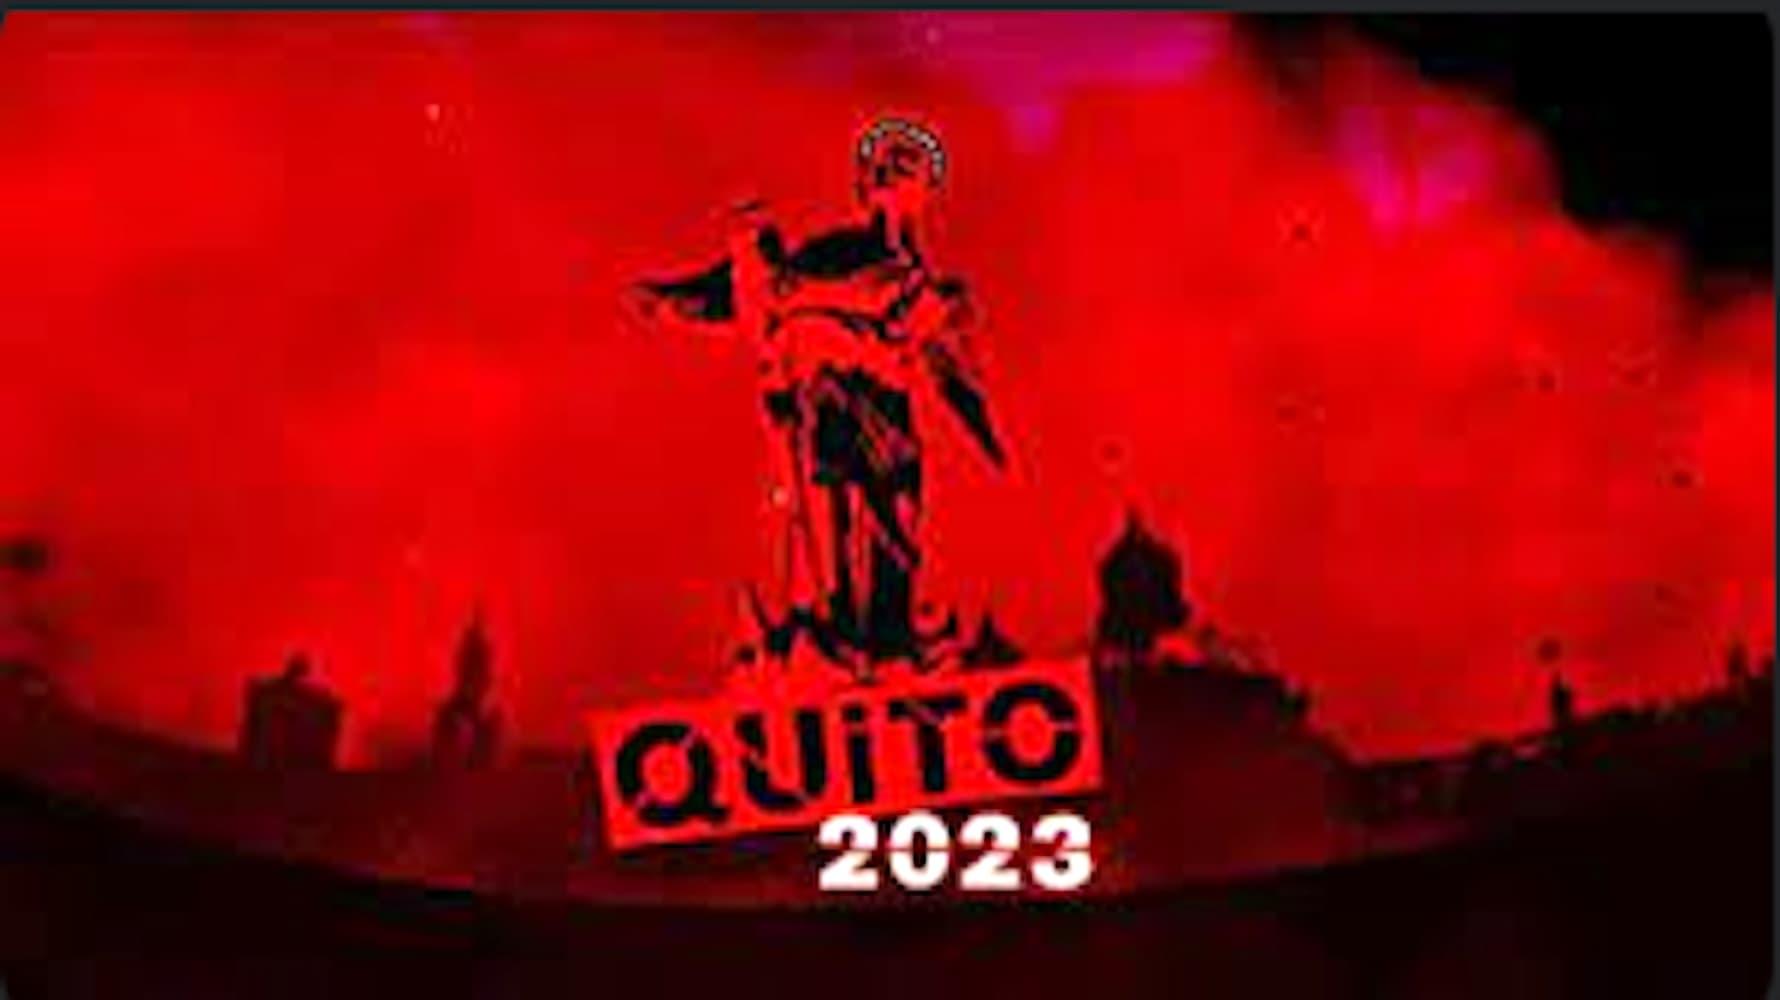 Quito 2023 backdrop